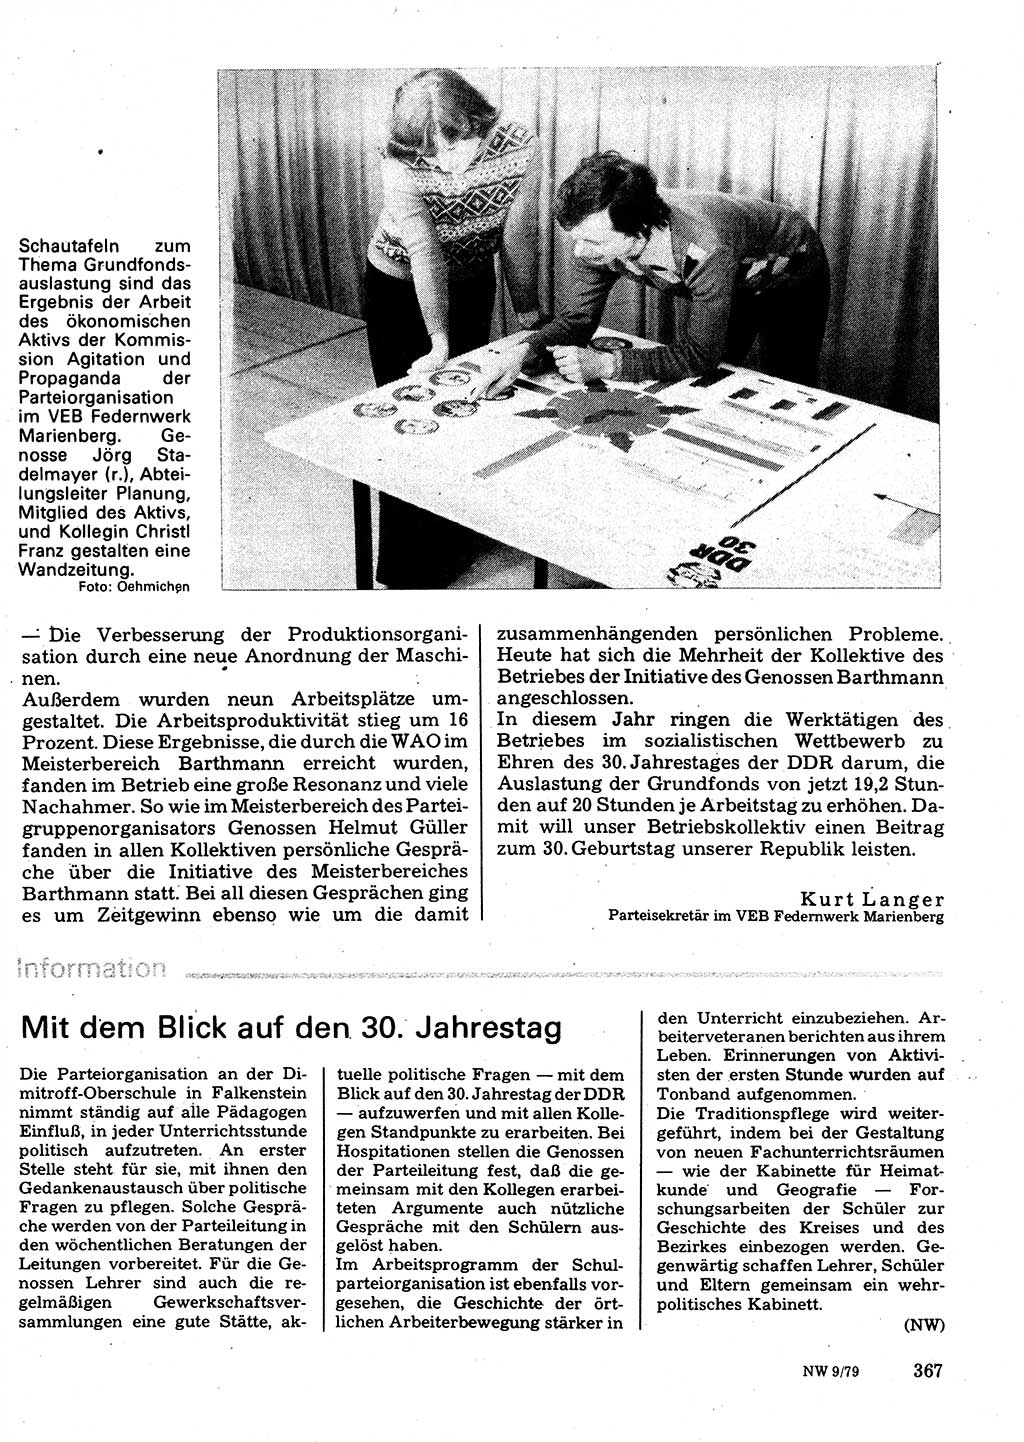 Neuer Weg (NW), Organ des Zentralkomitees (ZK) der SED (Sozialistische Einheitspartei Deutschlands) für Fragen des Parteilebens, 34. Jahrgang [Deutsche Demokratische Republik (DDR)] 1979, Seite 367 (NW ZK SED DDR 1979, S. 367)